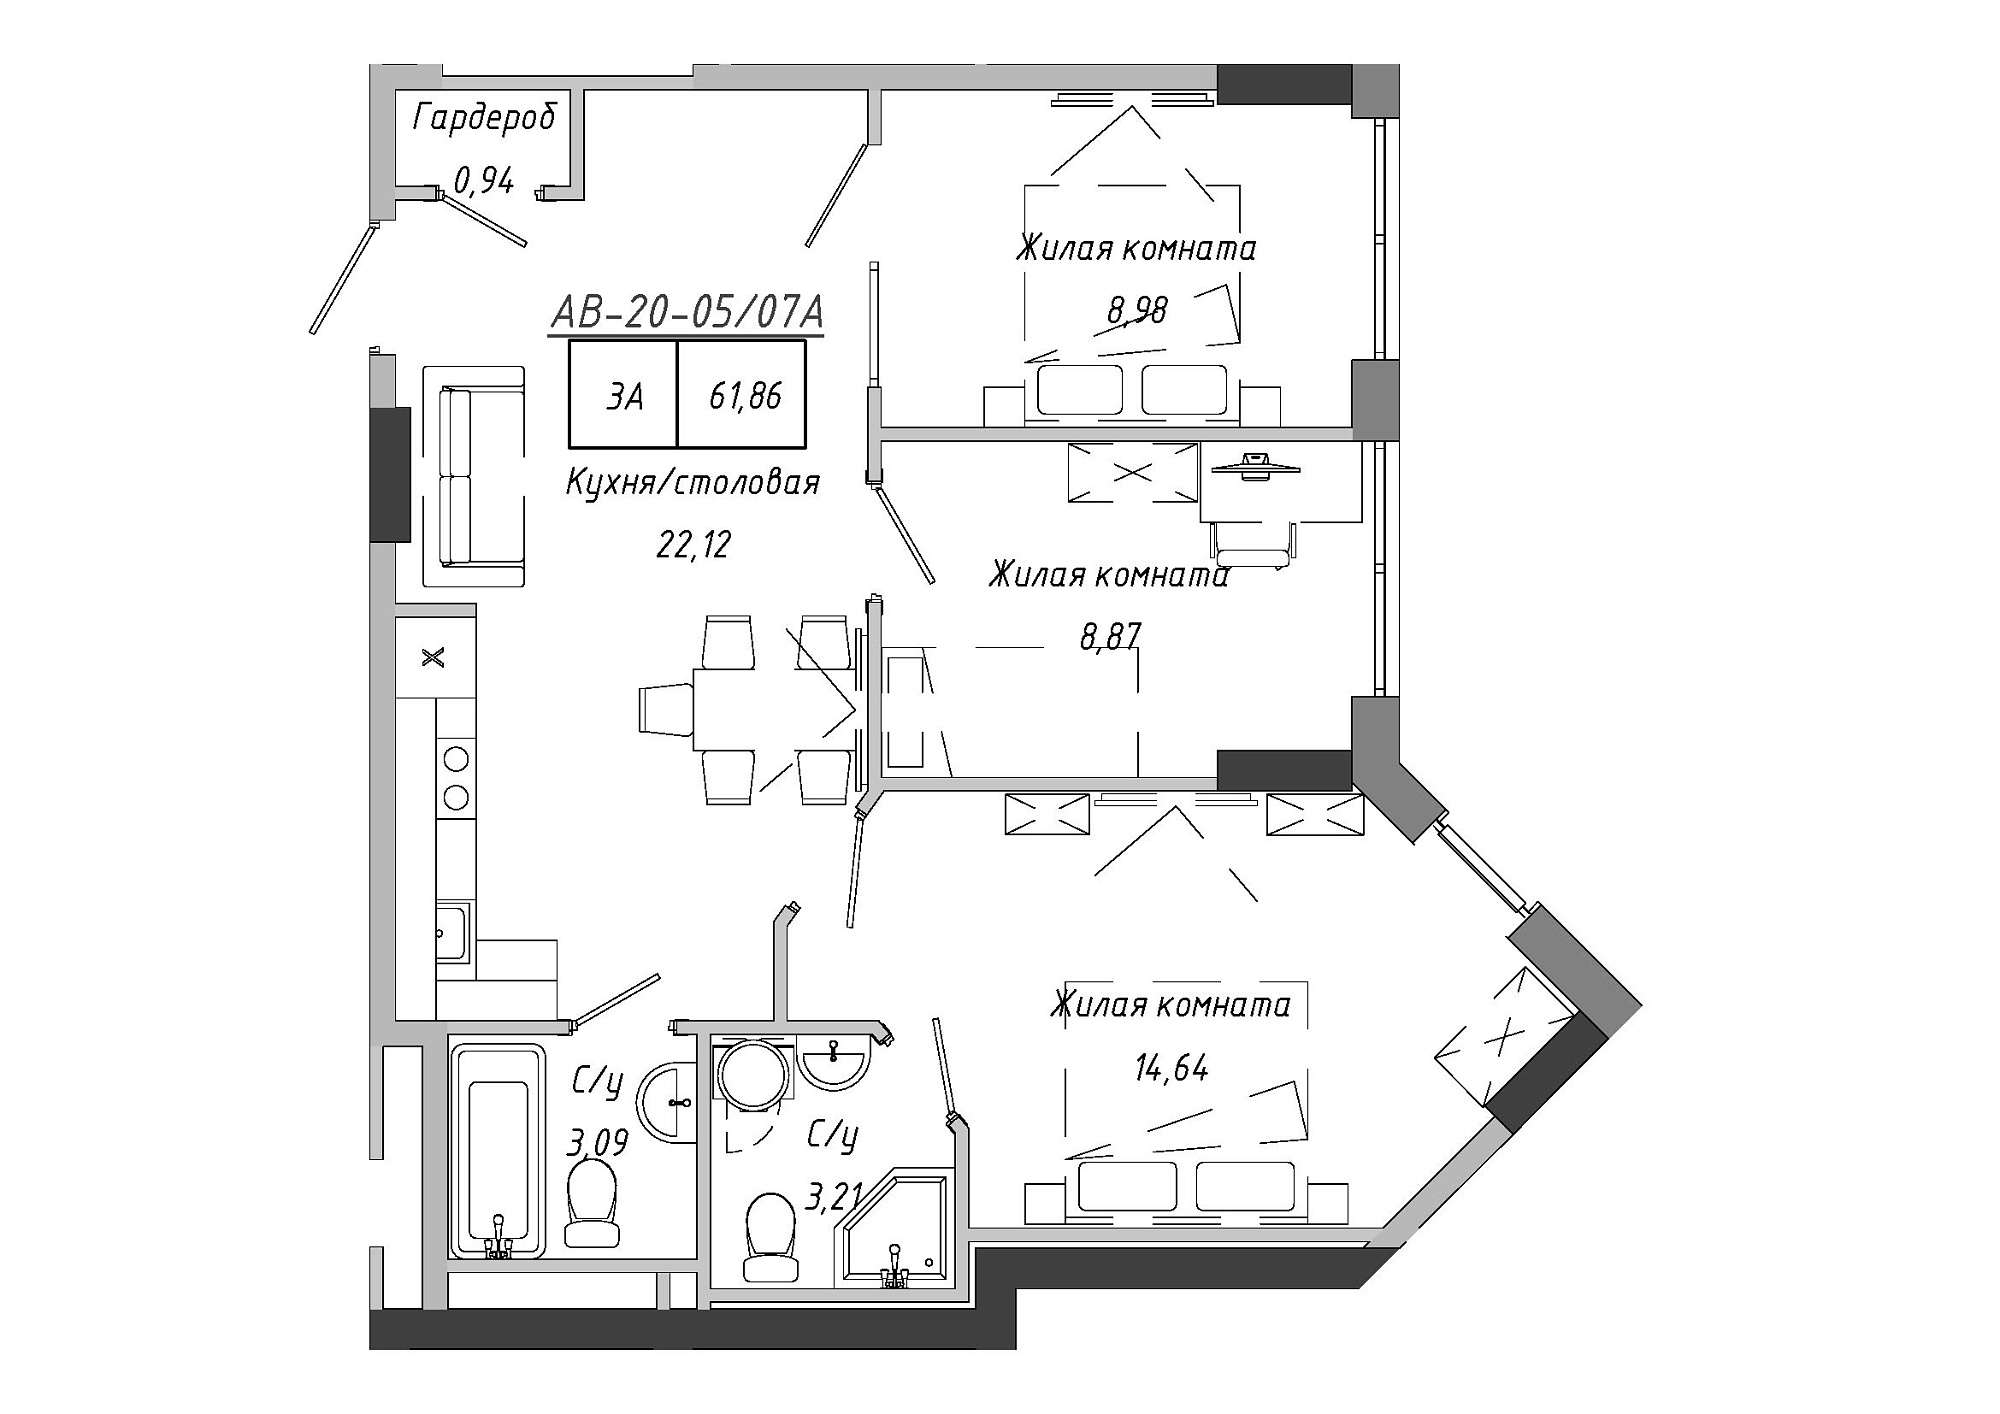 Планування 3-к квартира площею 62.67м2, AB-20-05/0007а.